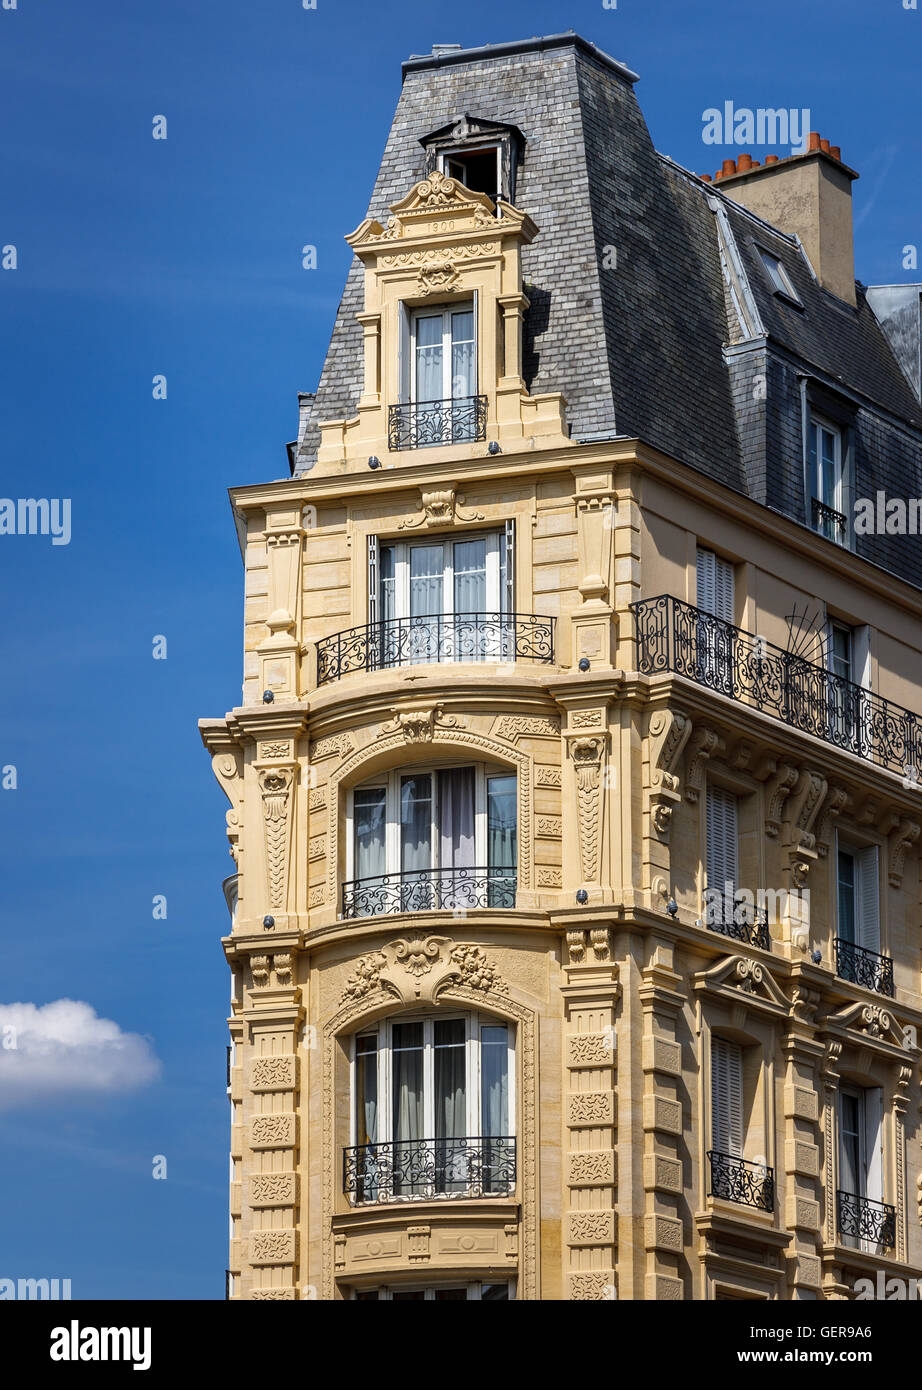 Edificio de estilo Haussmann en el corazón de París con trabajos decorativos en piedra, balcones de hierro forjado y una mansarda de pizarra. Francia Foto de stock